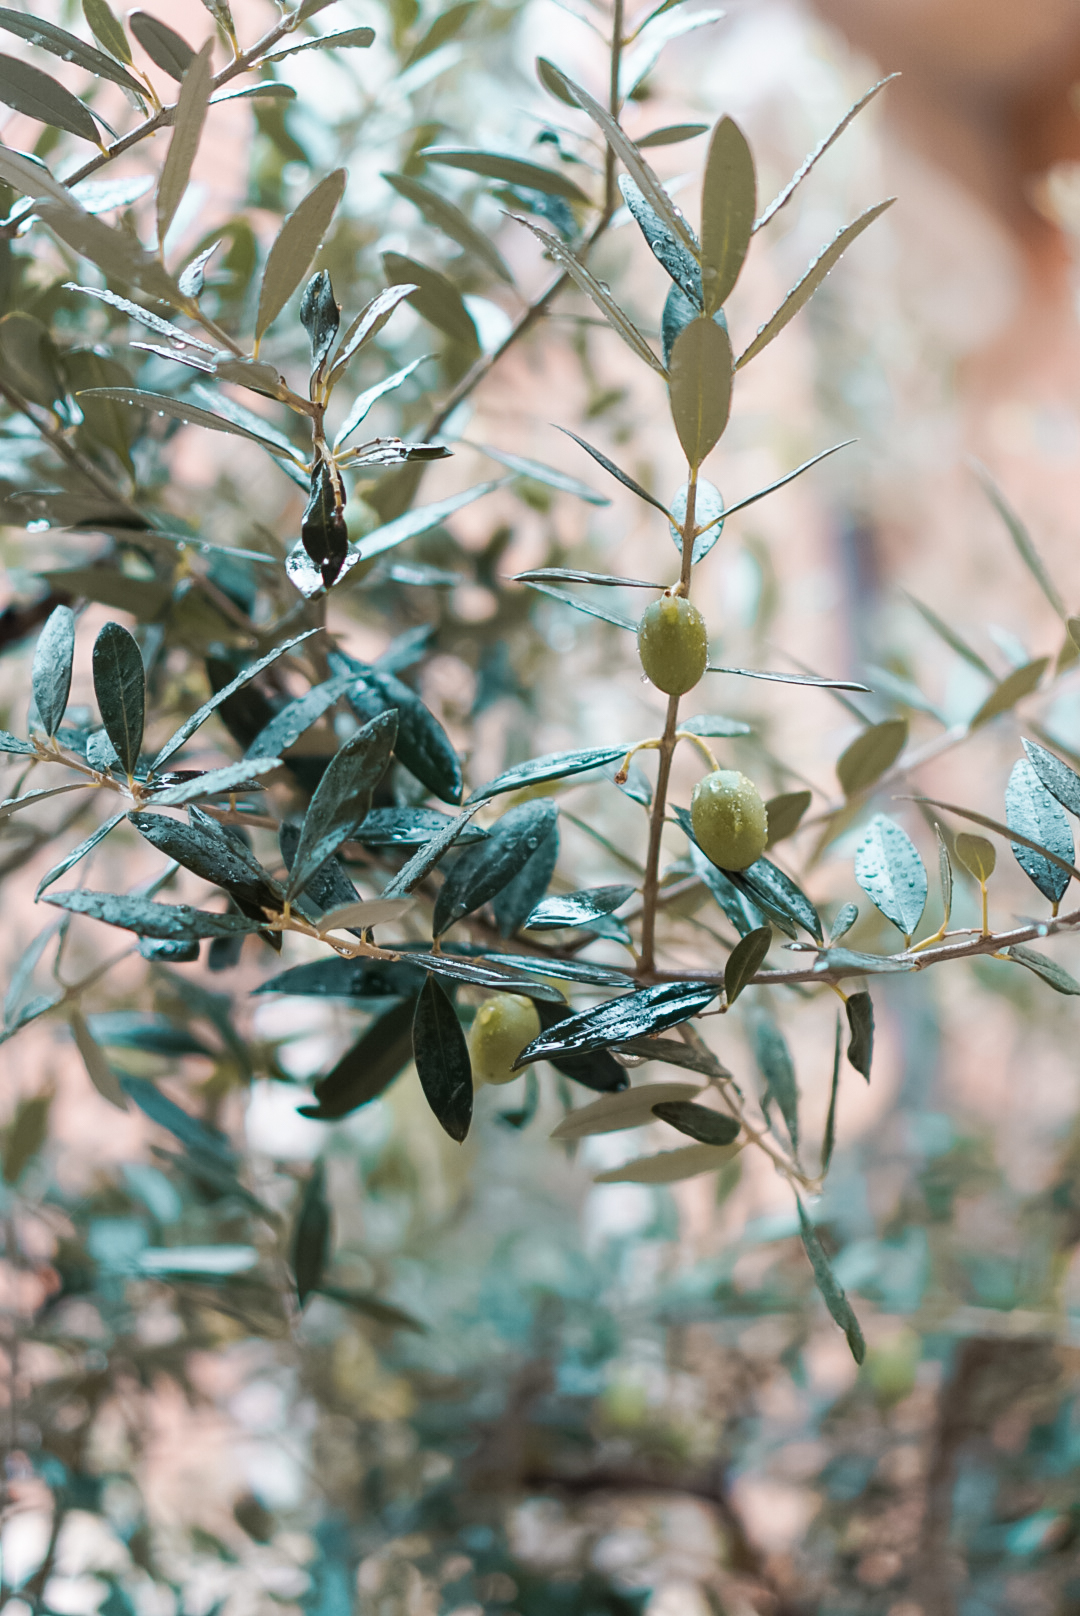 olives on olive branch